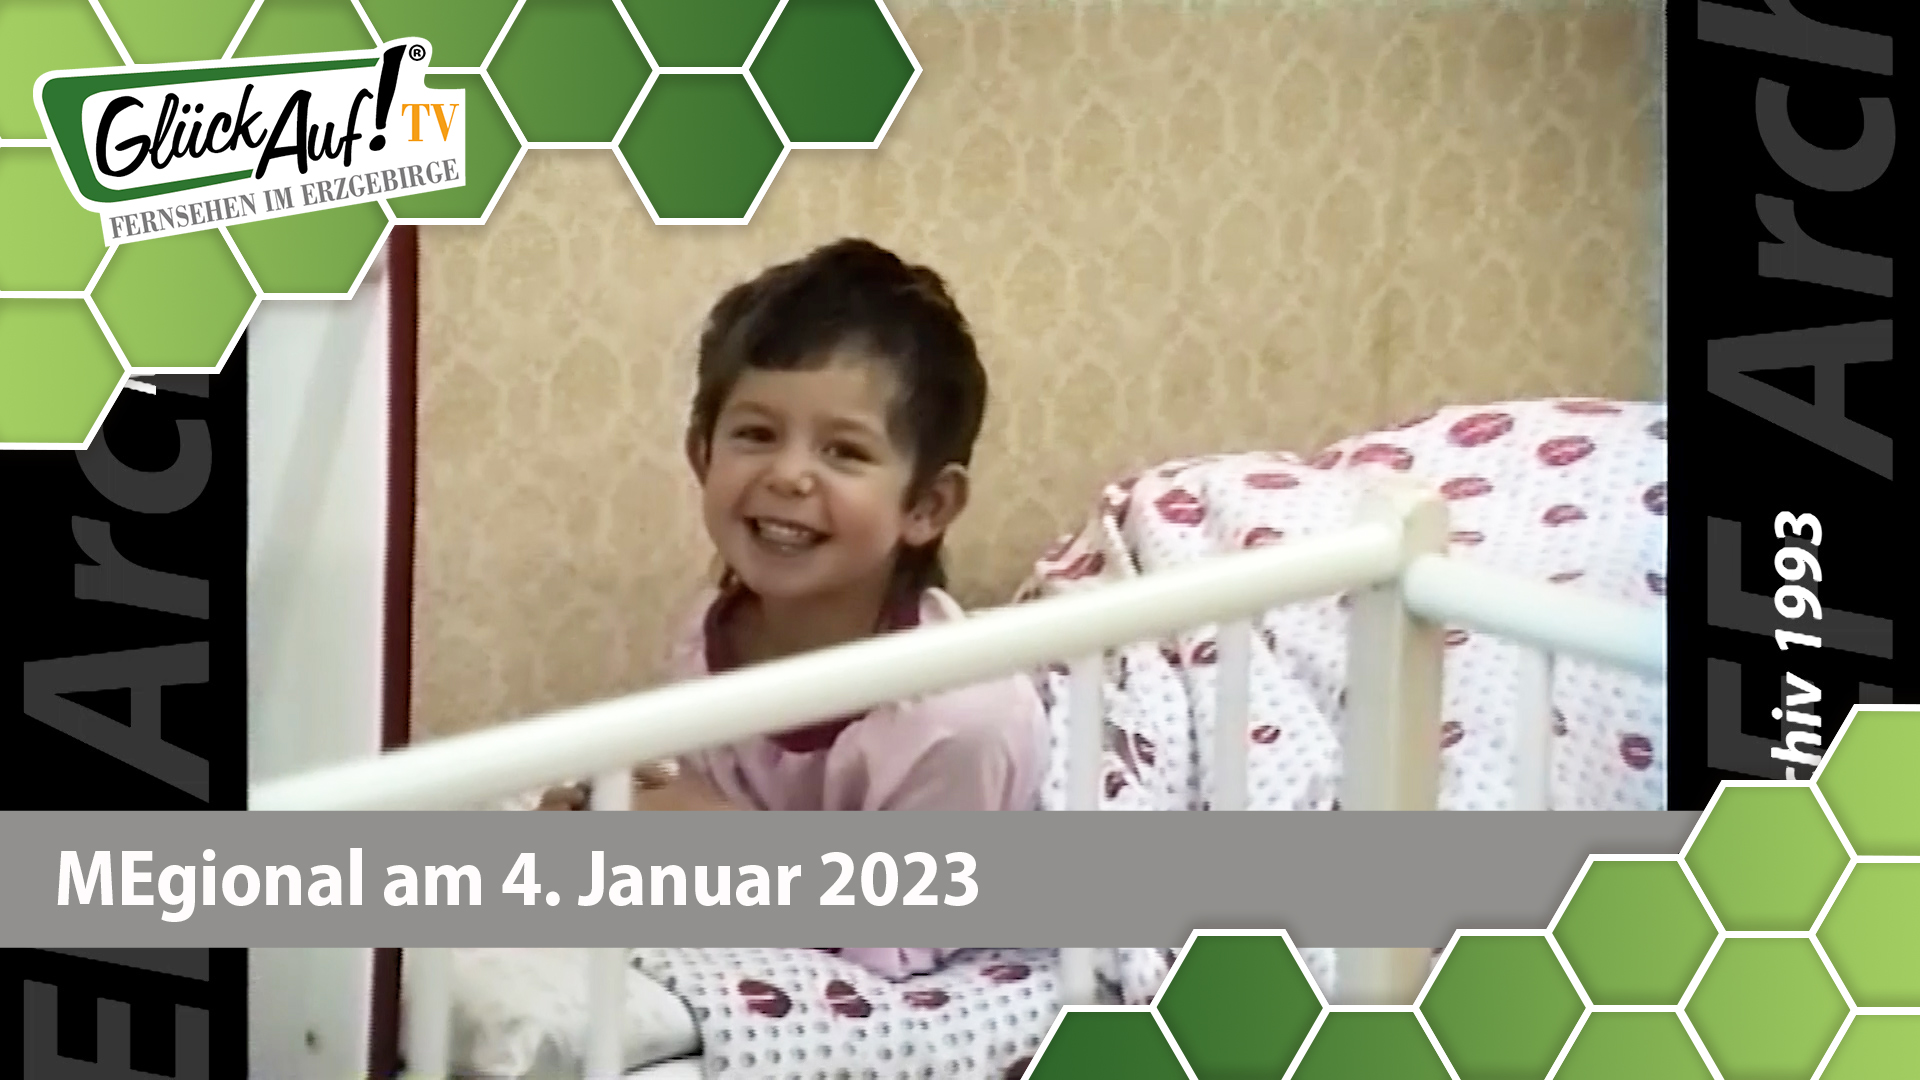 MEgional am 04. Januar 2023 - mit Kindergartenkindern von damals